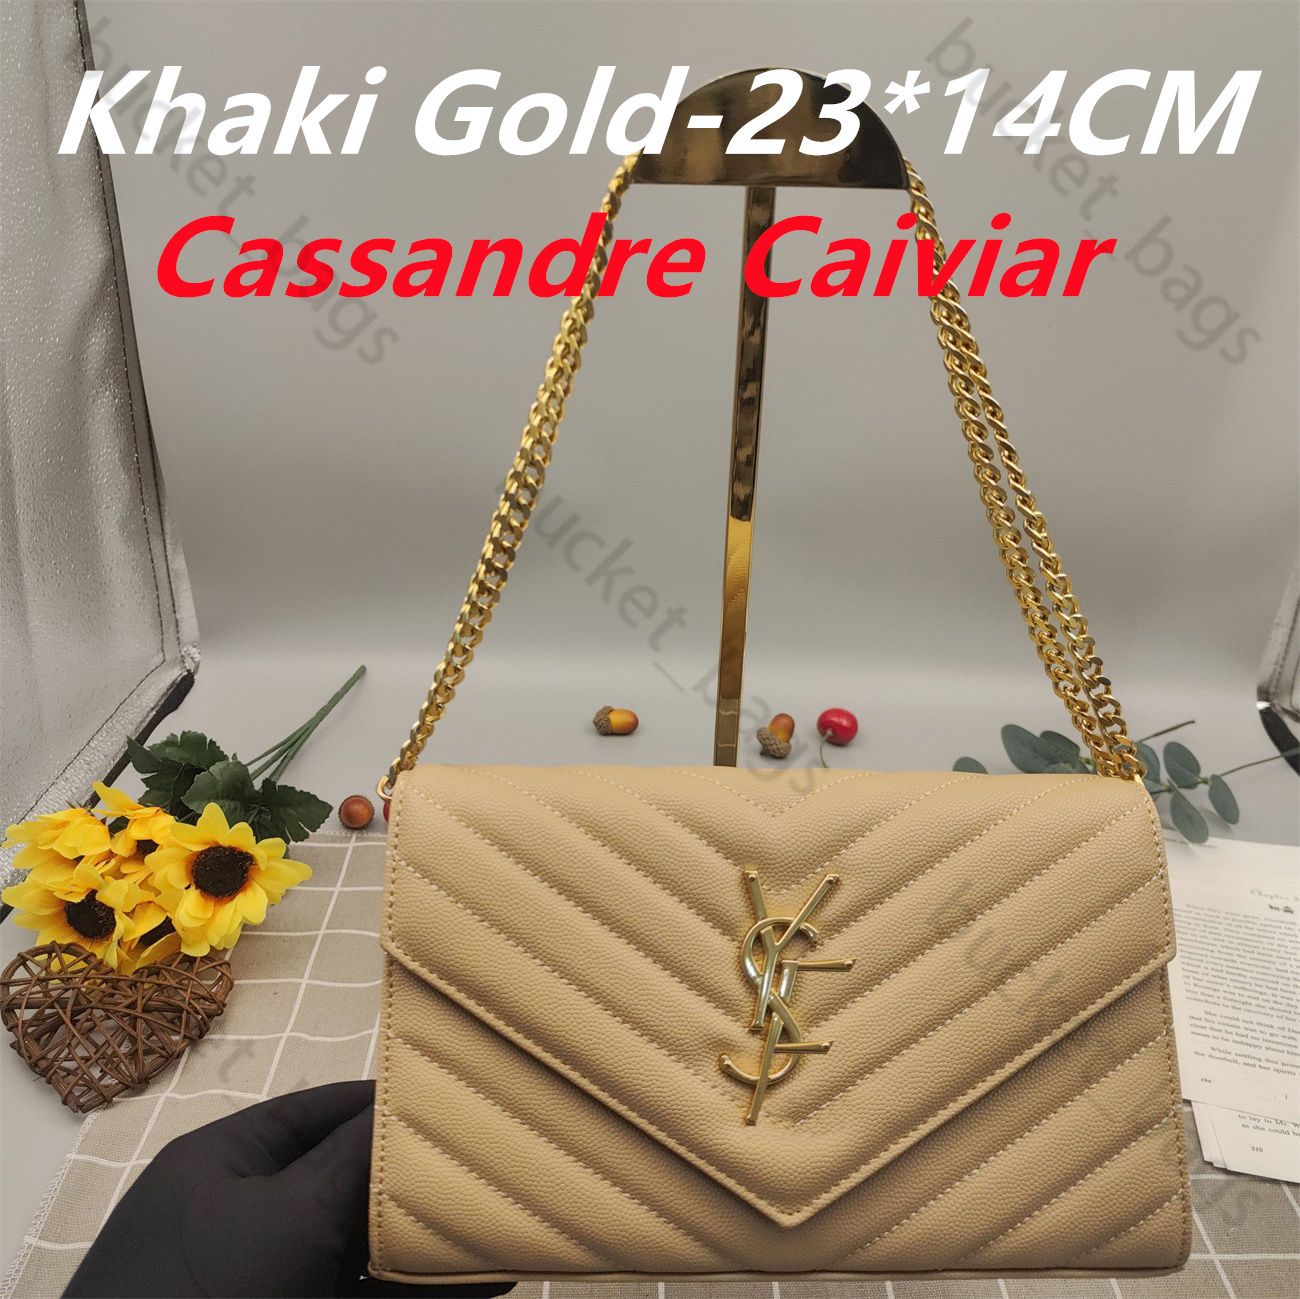 Caviar-Khaki Gold